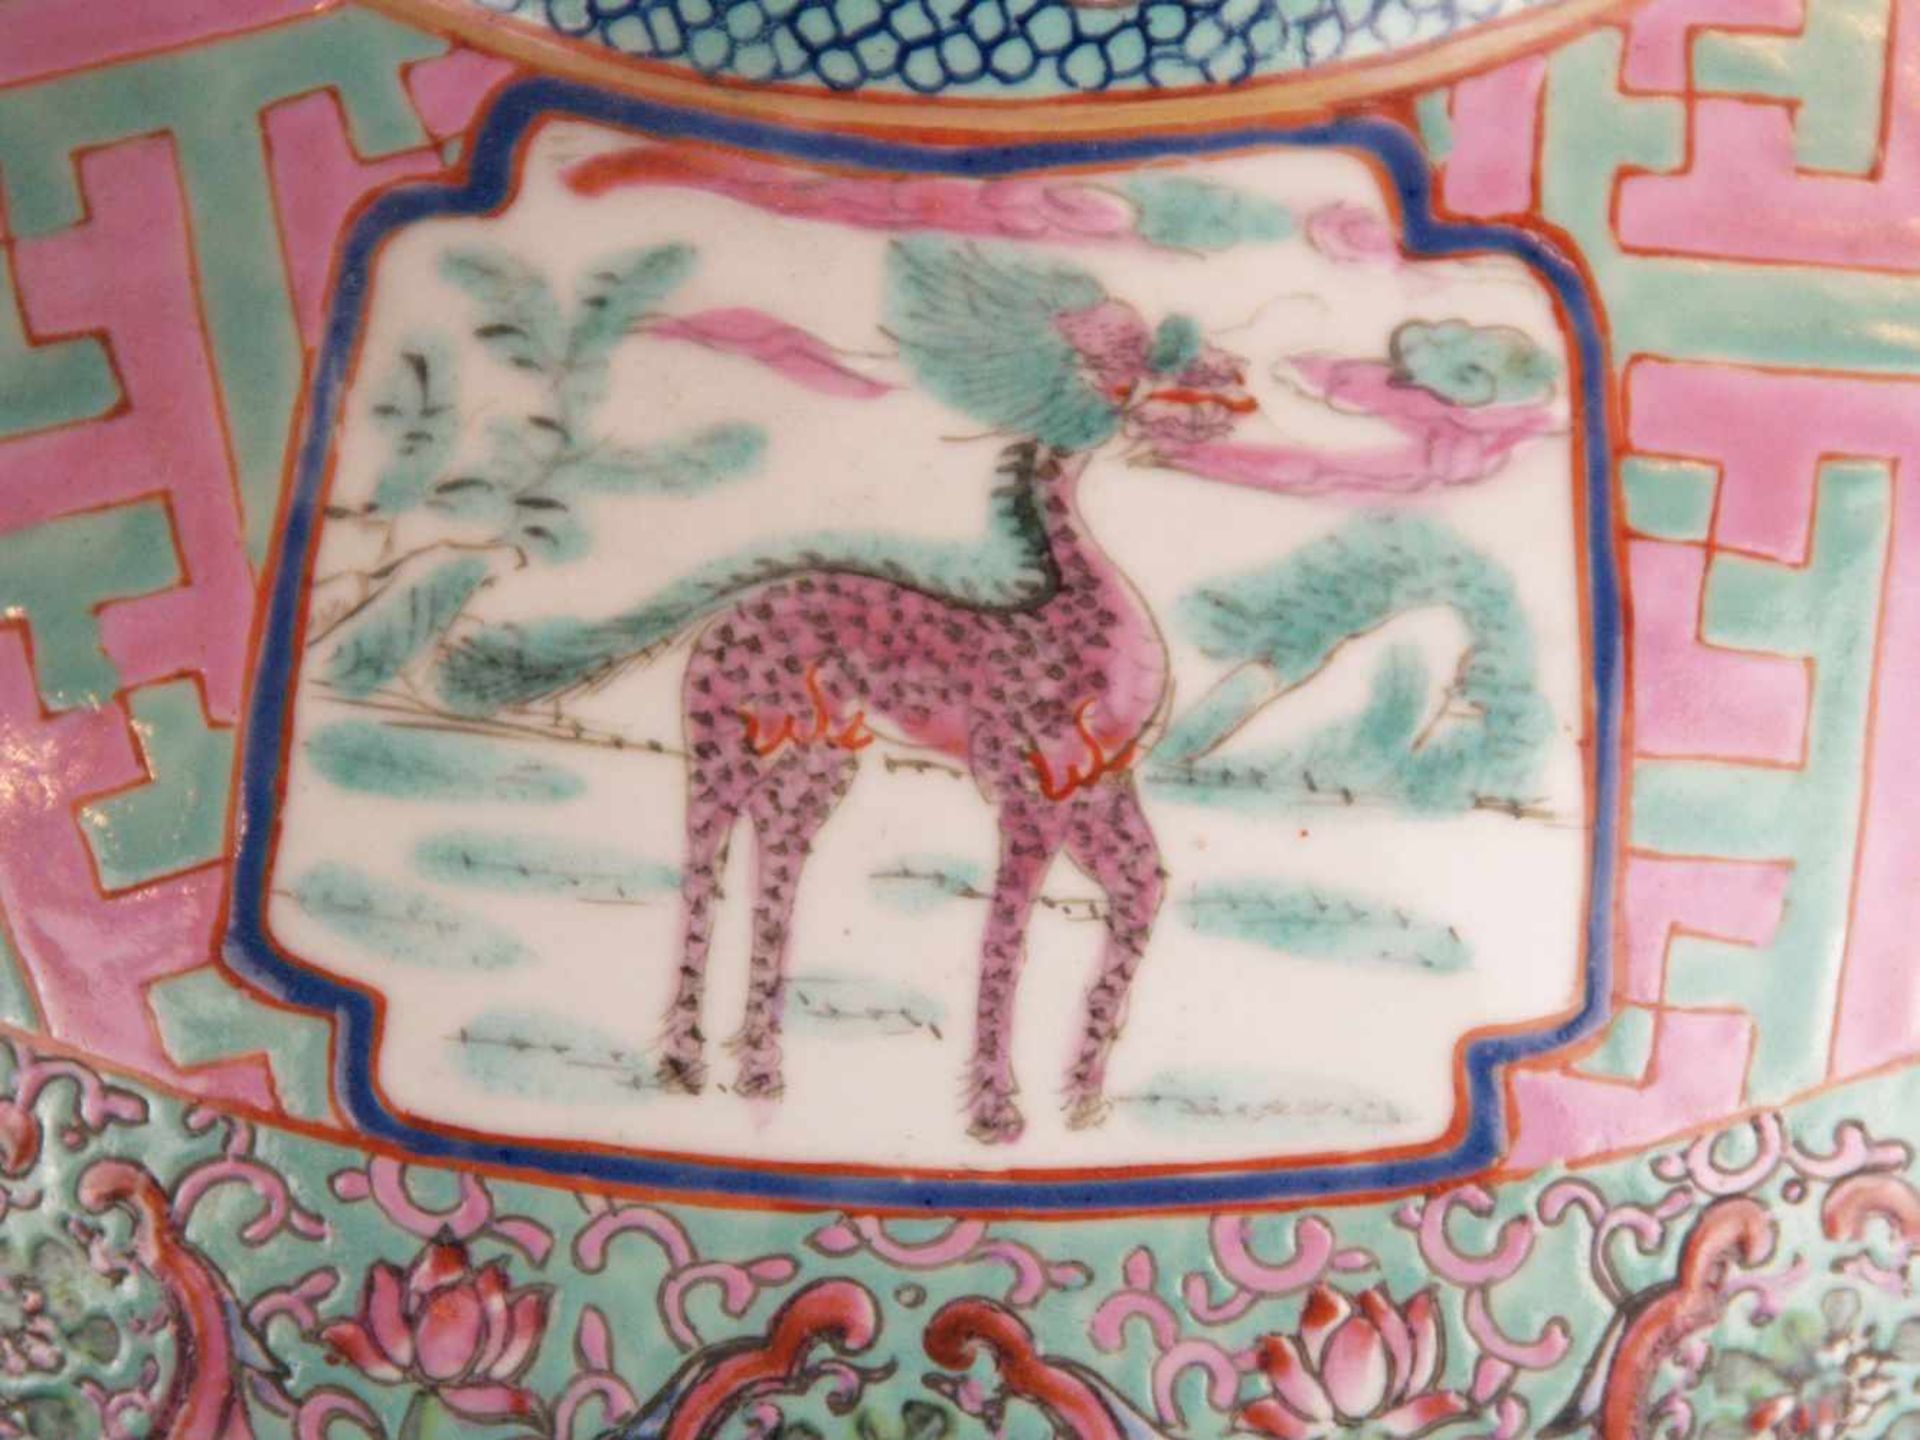 Paar Bodenvasen - China 20.Jh.,Tian qiu ping-Typus, üppiger Dekor in polychromen Emailfarben, auf - Bild 8 aus 15